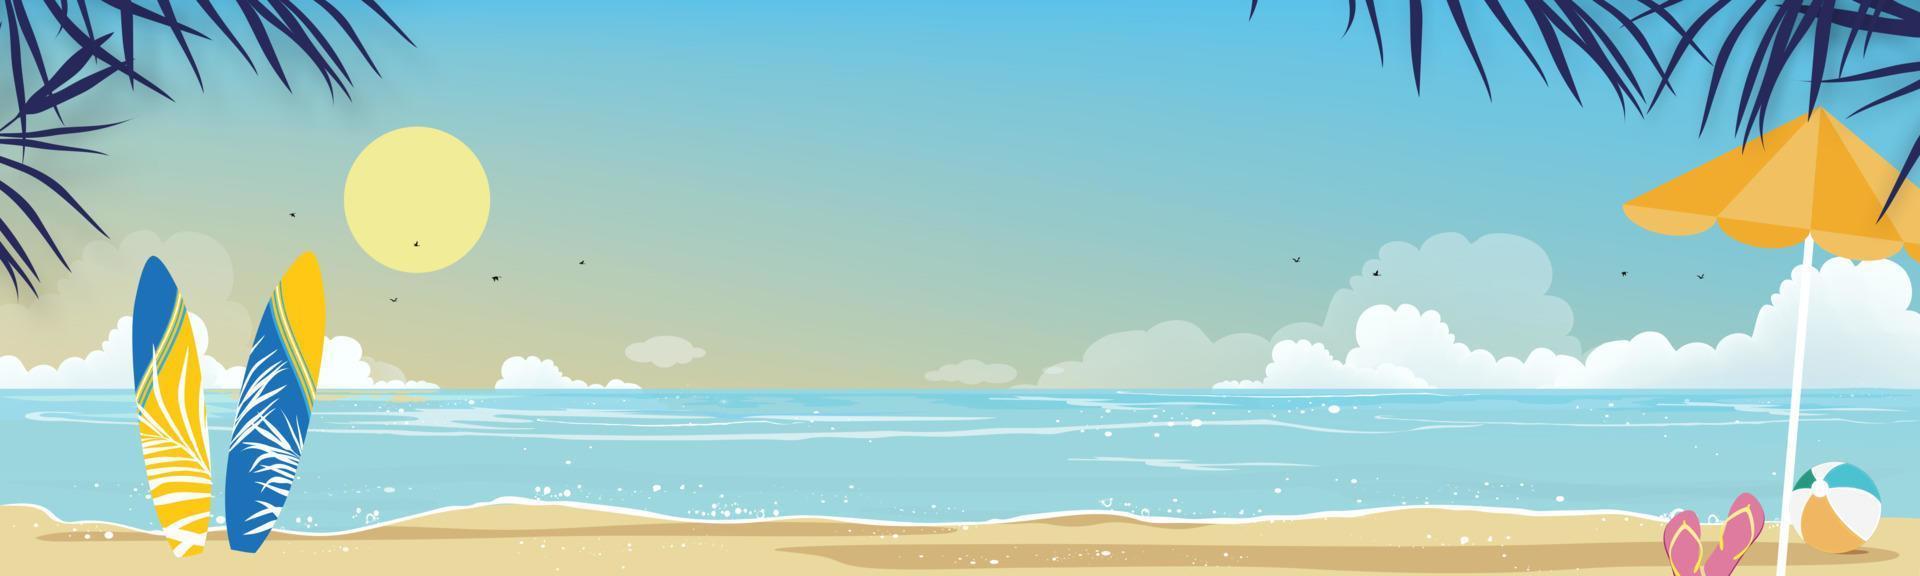 paysage marin de l'océan bleu et cocotier sur l'île, plage de mer horizontale, sable avec ciel bleu et nuage moelleux, illustration vectorielle belle nature du paysage balnéaire pour fond de vacances d'été vecteur